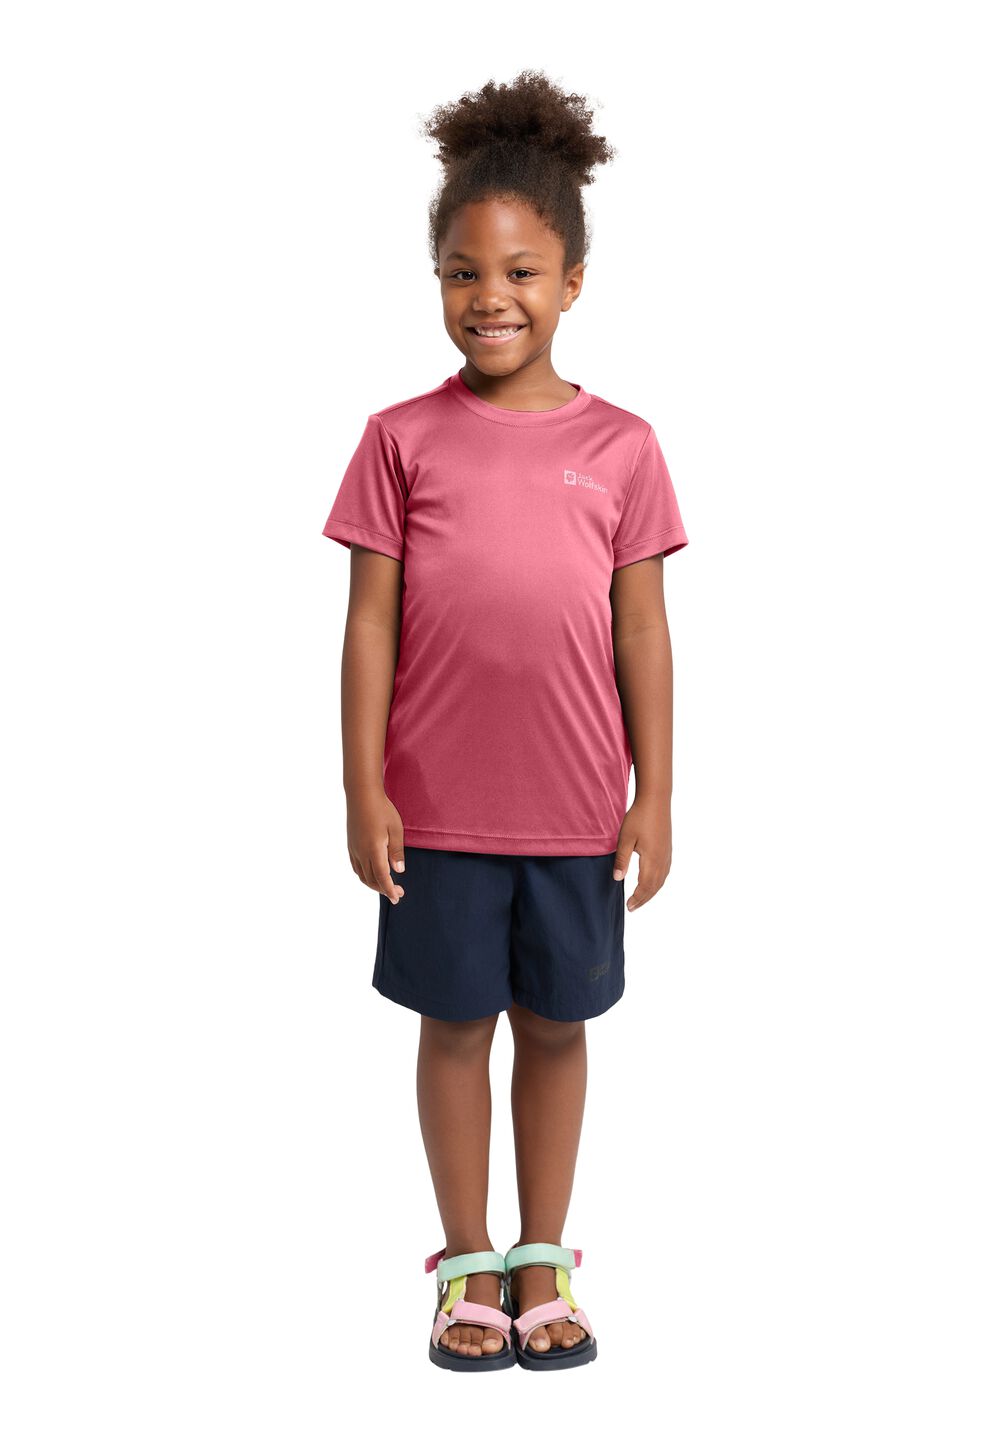 Jack Wolfskin Active Solid T-Shirt Kids Functioneel shirt Kinderen 164 soft pink soft pink